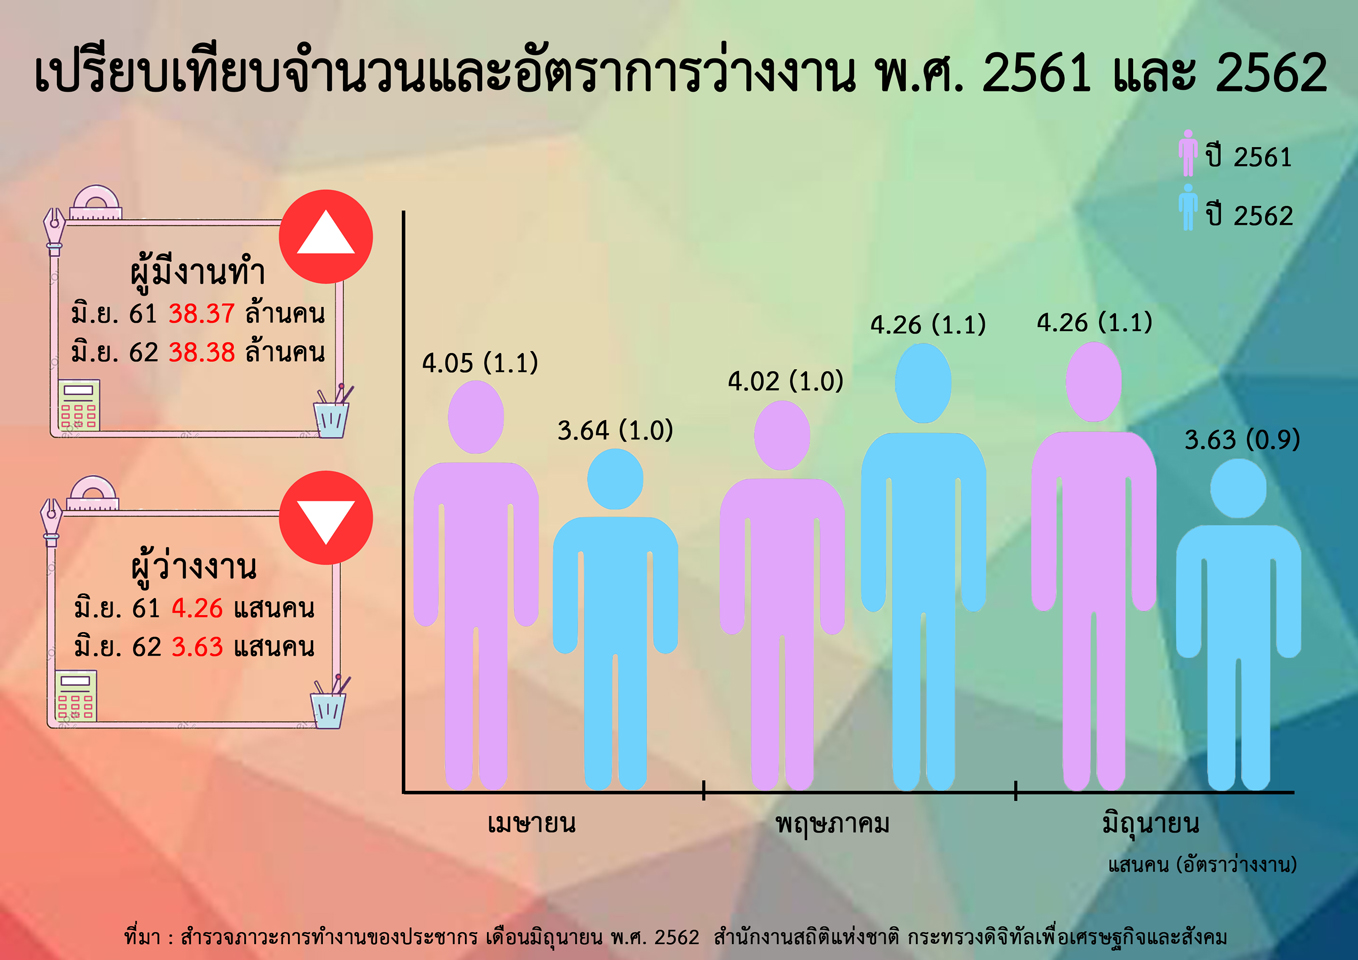 สำนักงานสถิติฯ เผยการทำงานของประชากรเดือนมิถุนายน 2562